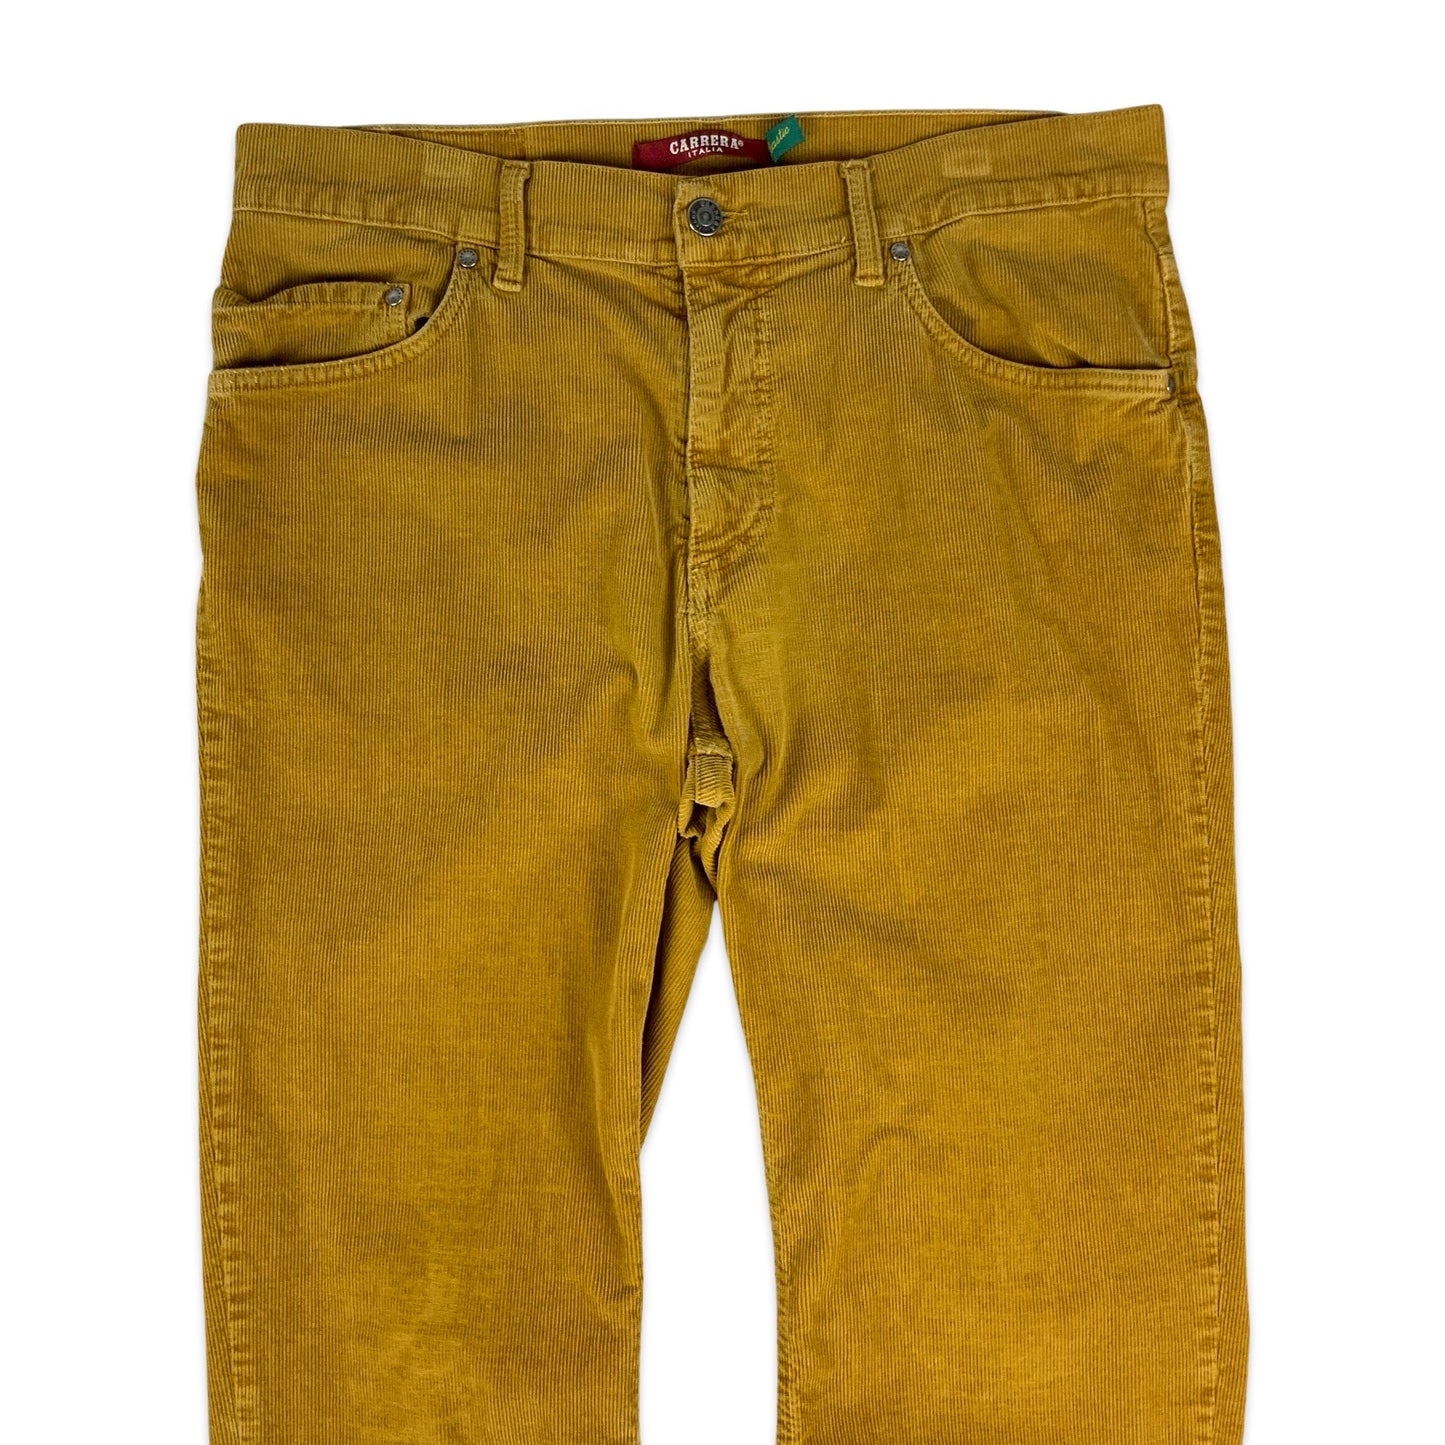 Vintage Yellow Corduroy Trousers 35W 34L